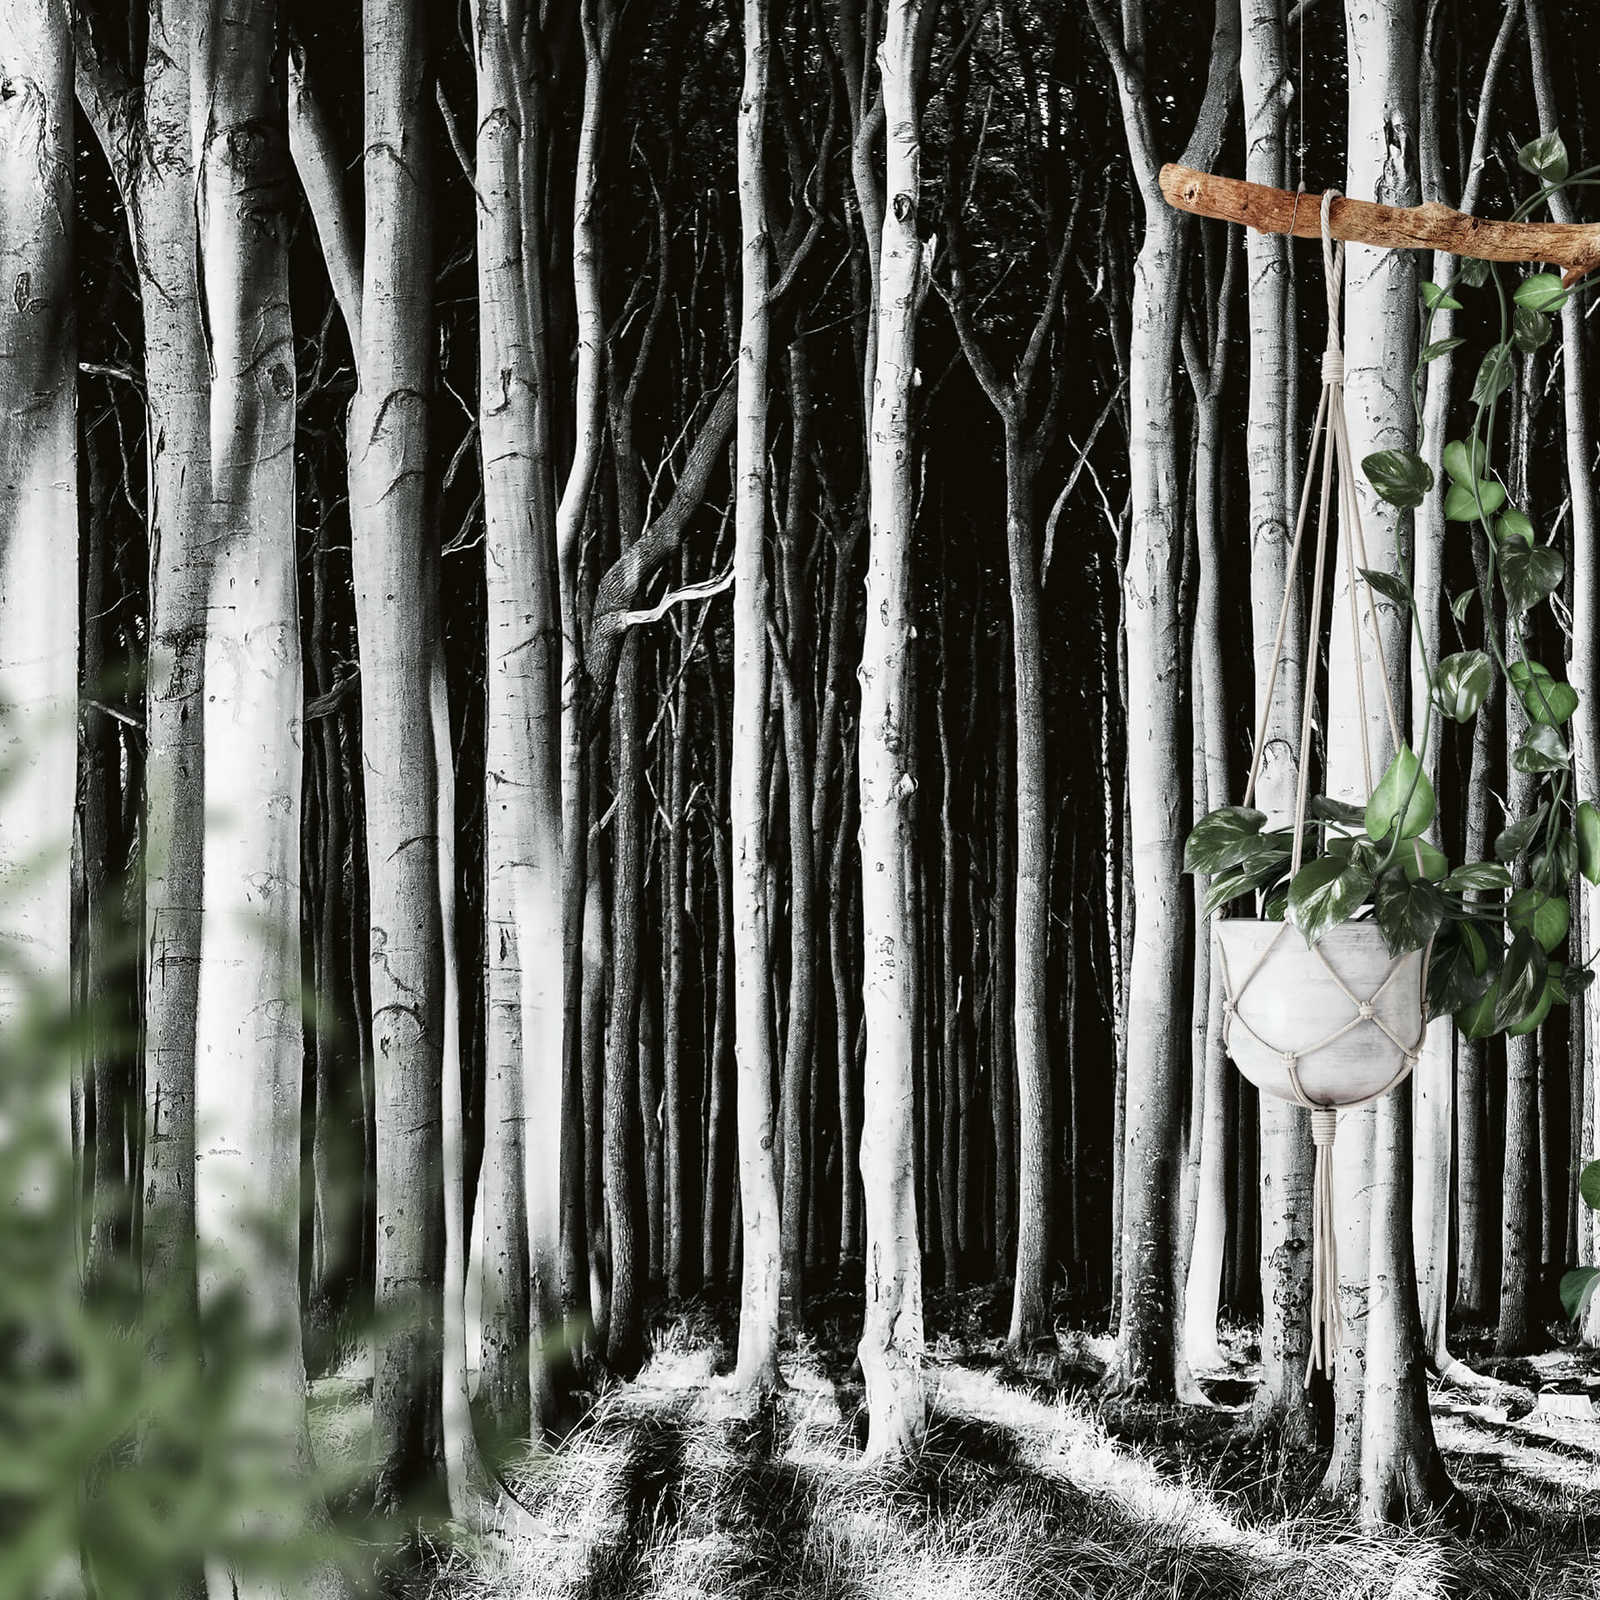             Fototapete Natur Geisterwald – Schwarz, Weiß, Grau
        